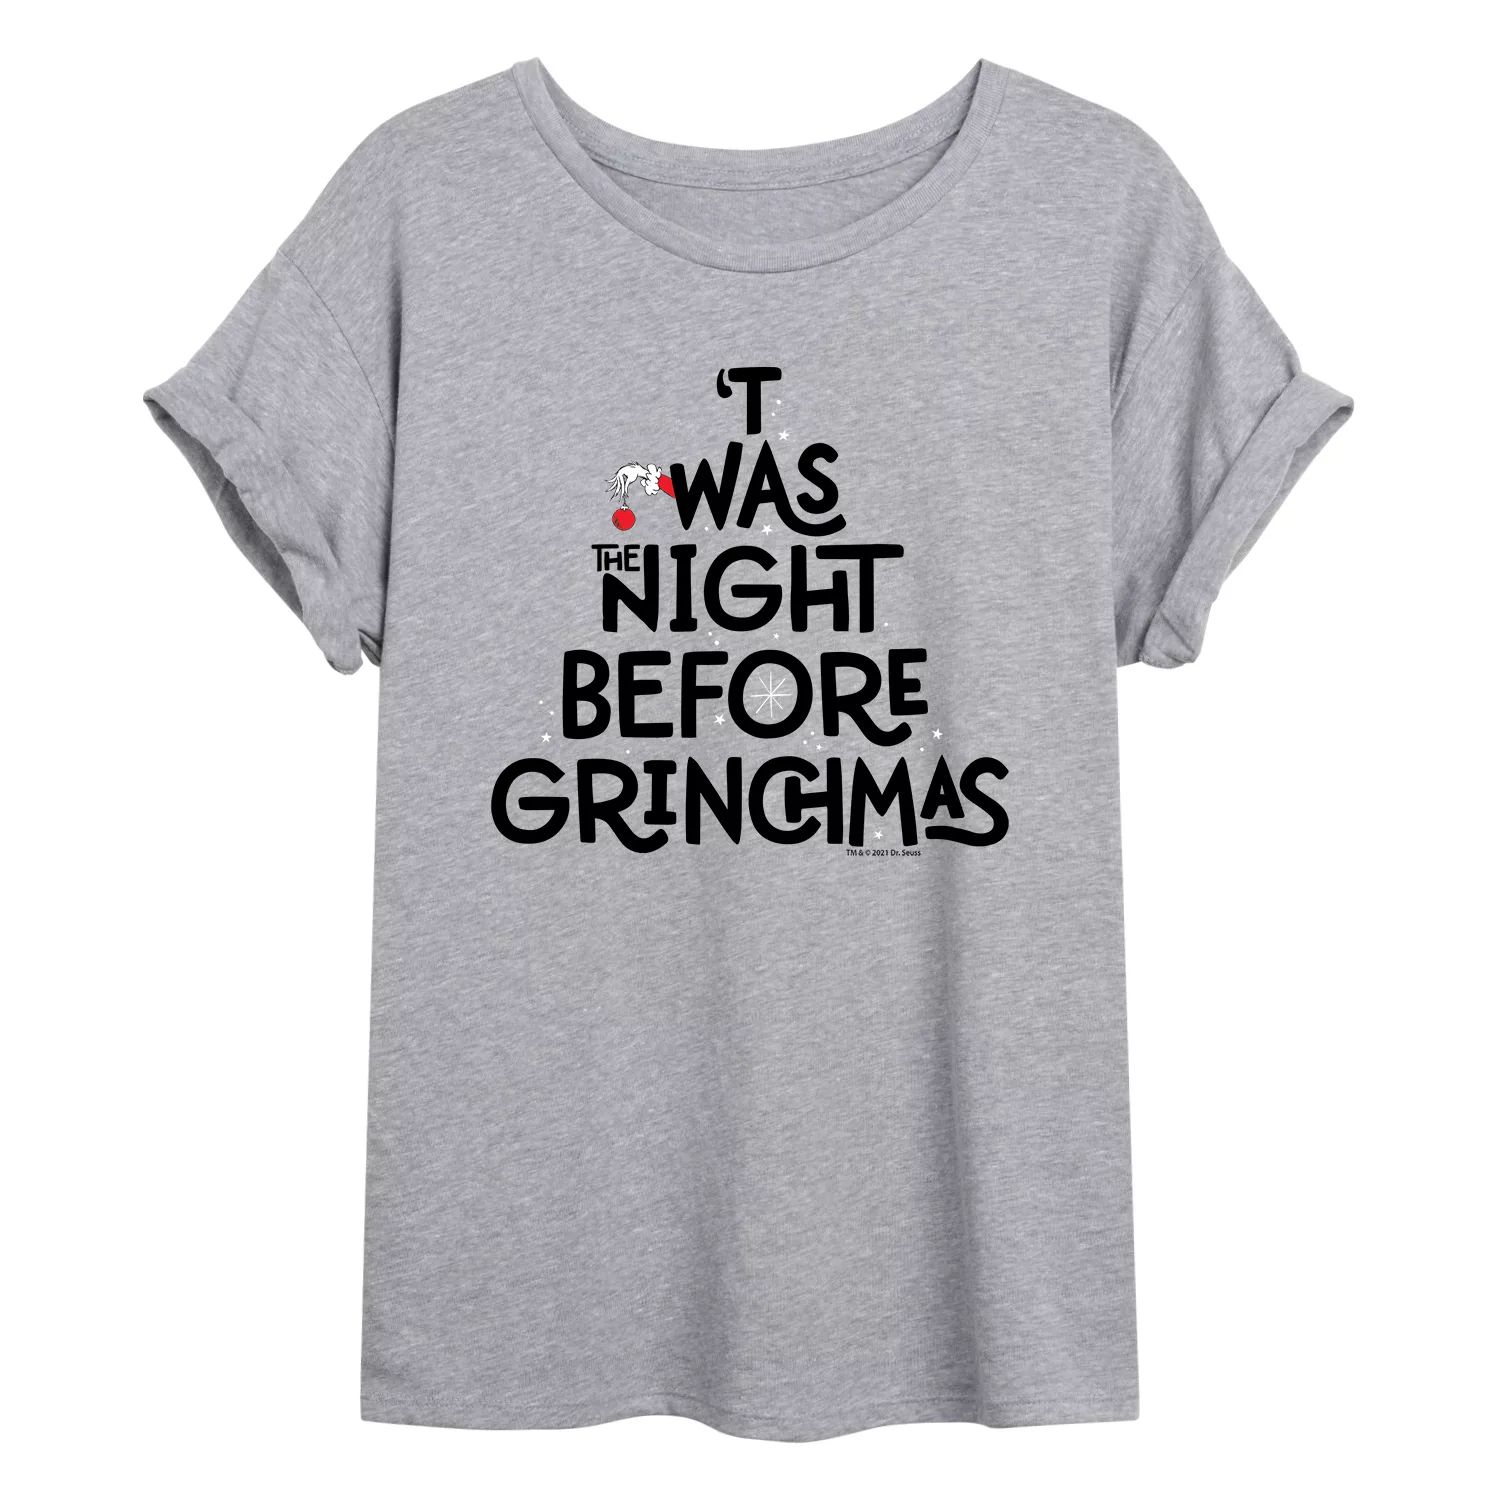 Размерная футболка с рисунком «Доктор Сьюз» для юниоров «Ночь перед Гринчмасом» Licensed Character